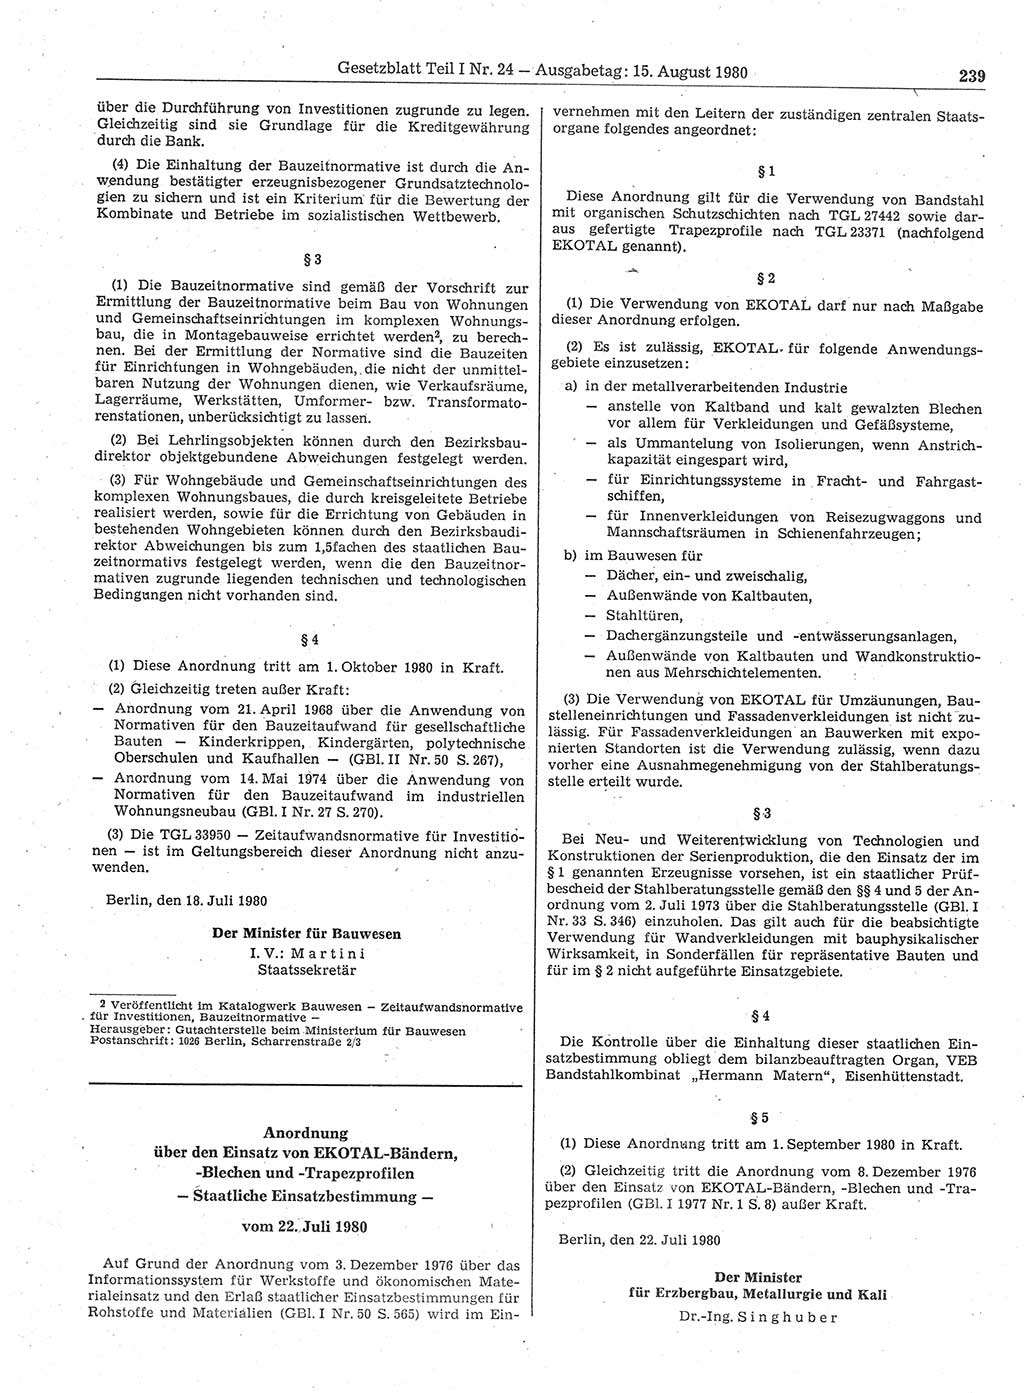 Gesetzblatt (GBl.) der Deutschen Demokratischen Republik (DDR) Teil Ⅰ 1980, Seite 239 (GBl. DDR Ⅰ 1980, S. 239)